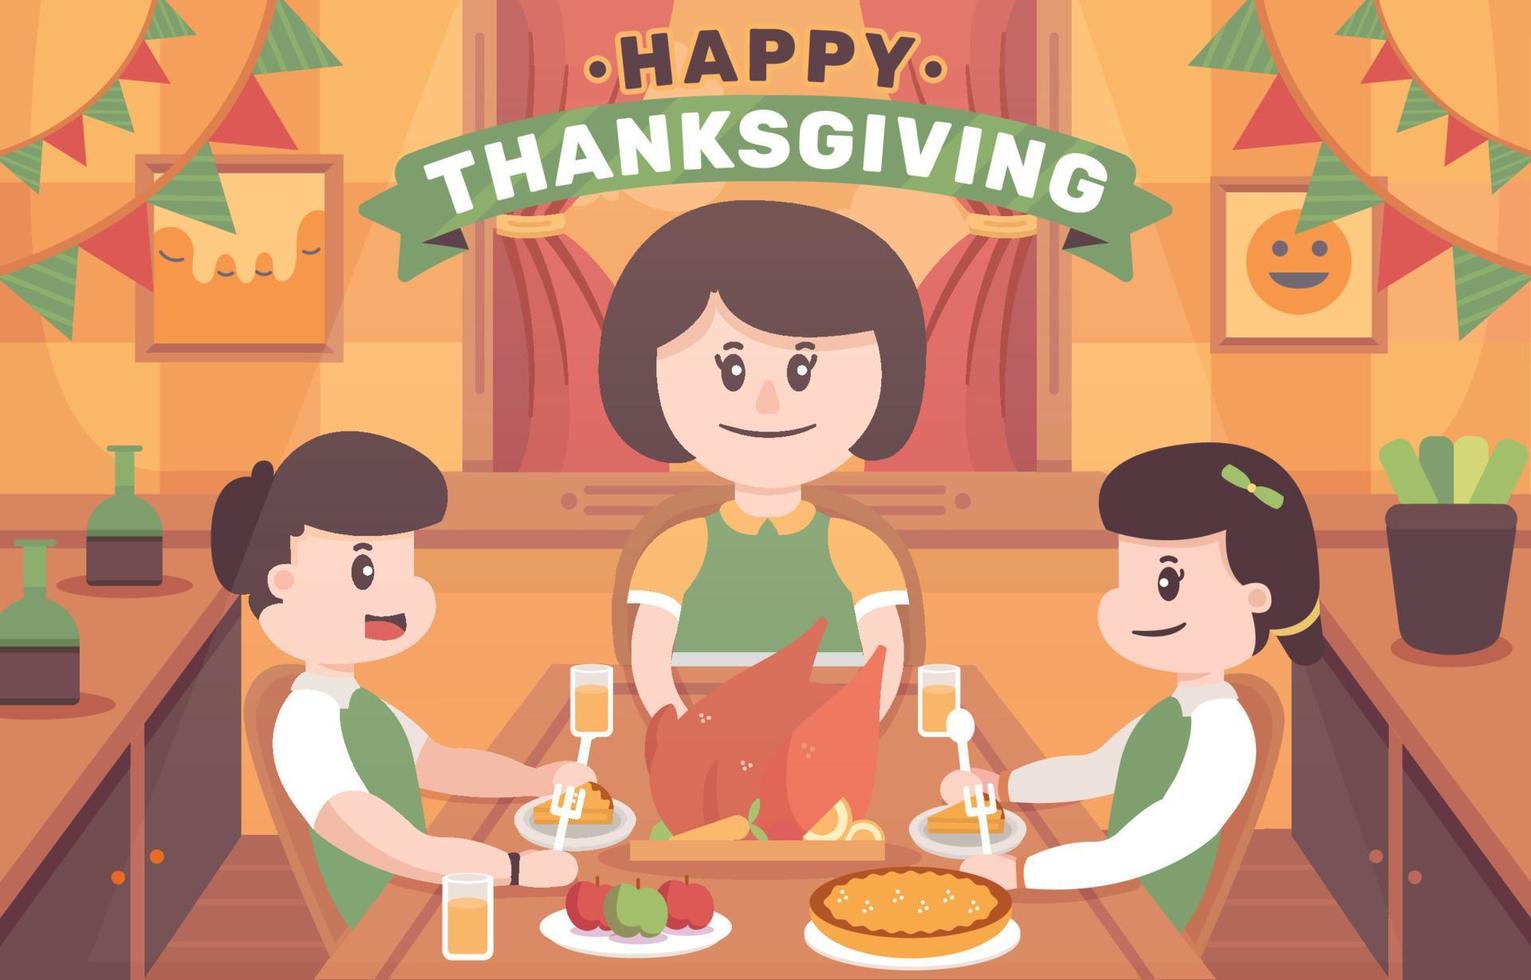 Happy Family Having Thanksgiving DInner vector